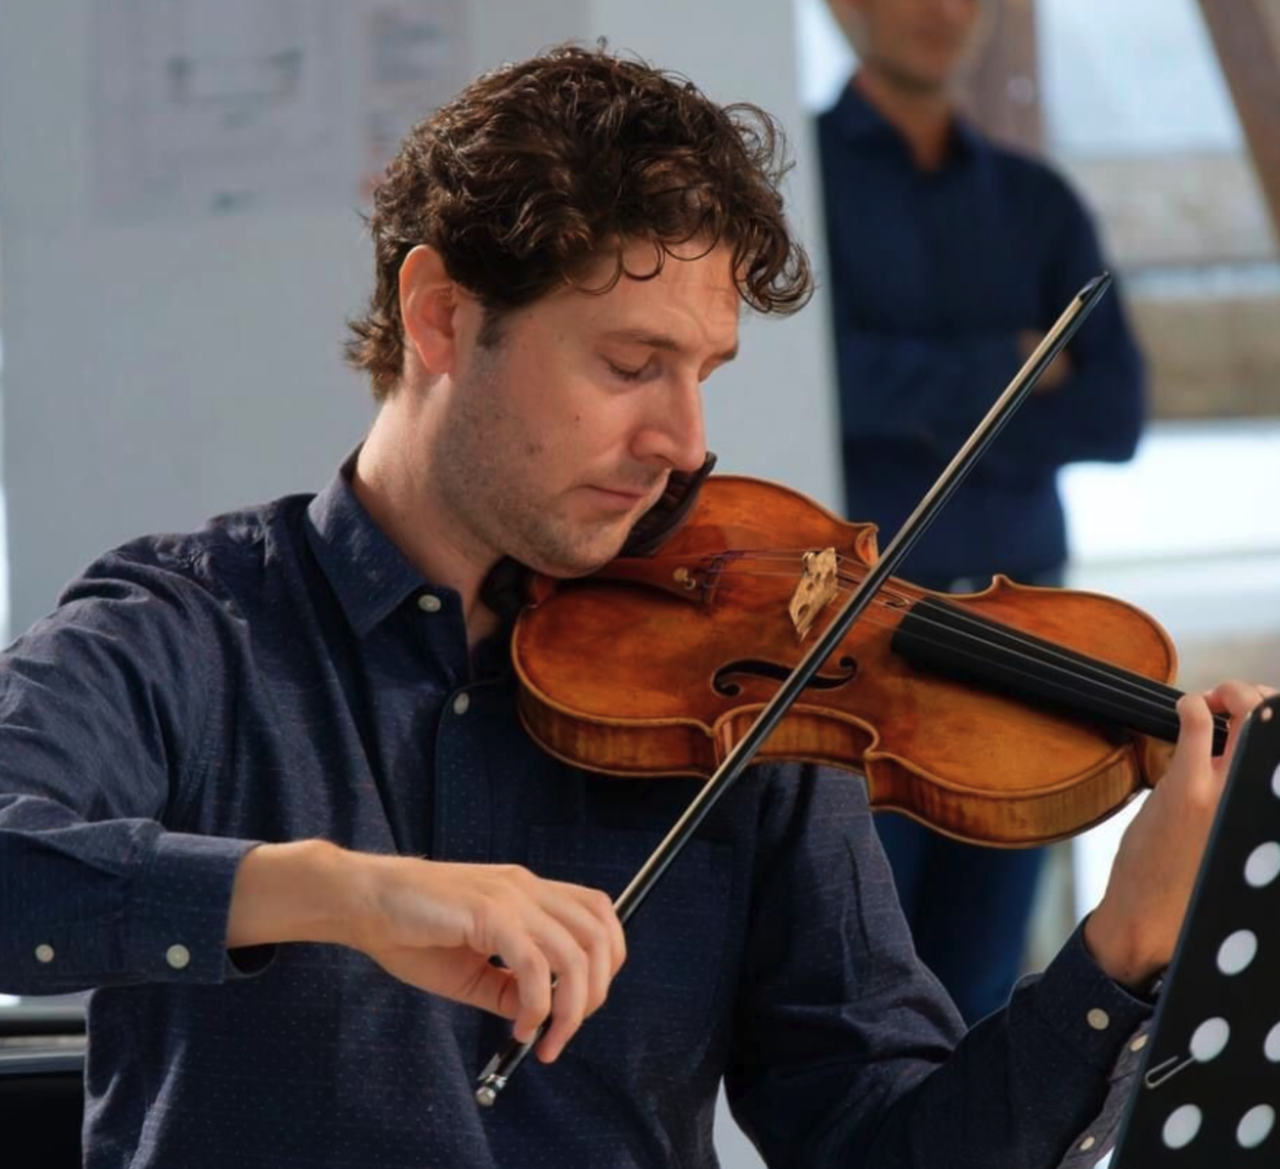 Recital de violín solo a cargo de Daniel García Gamaza